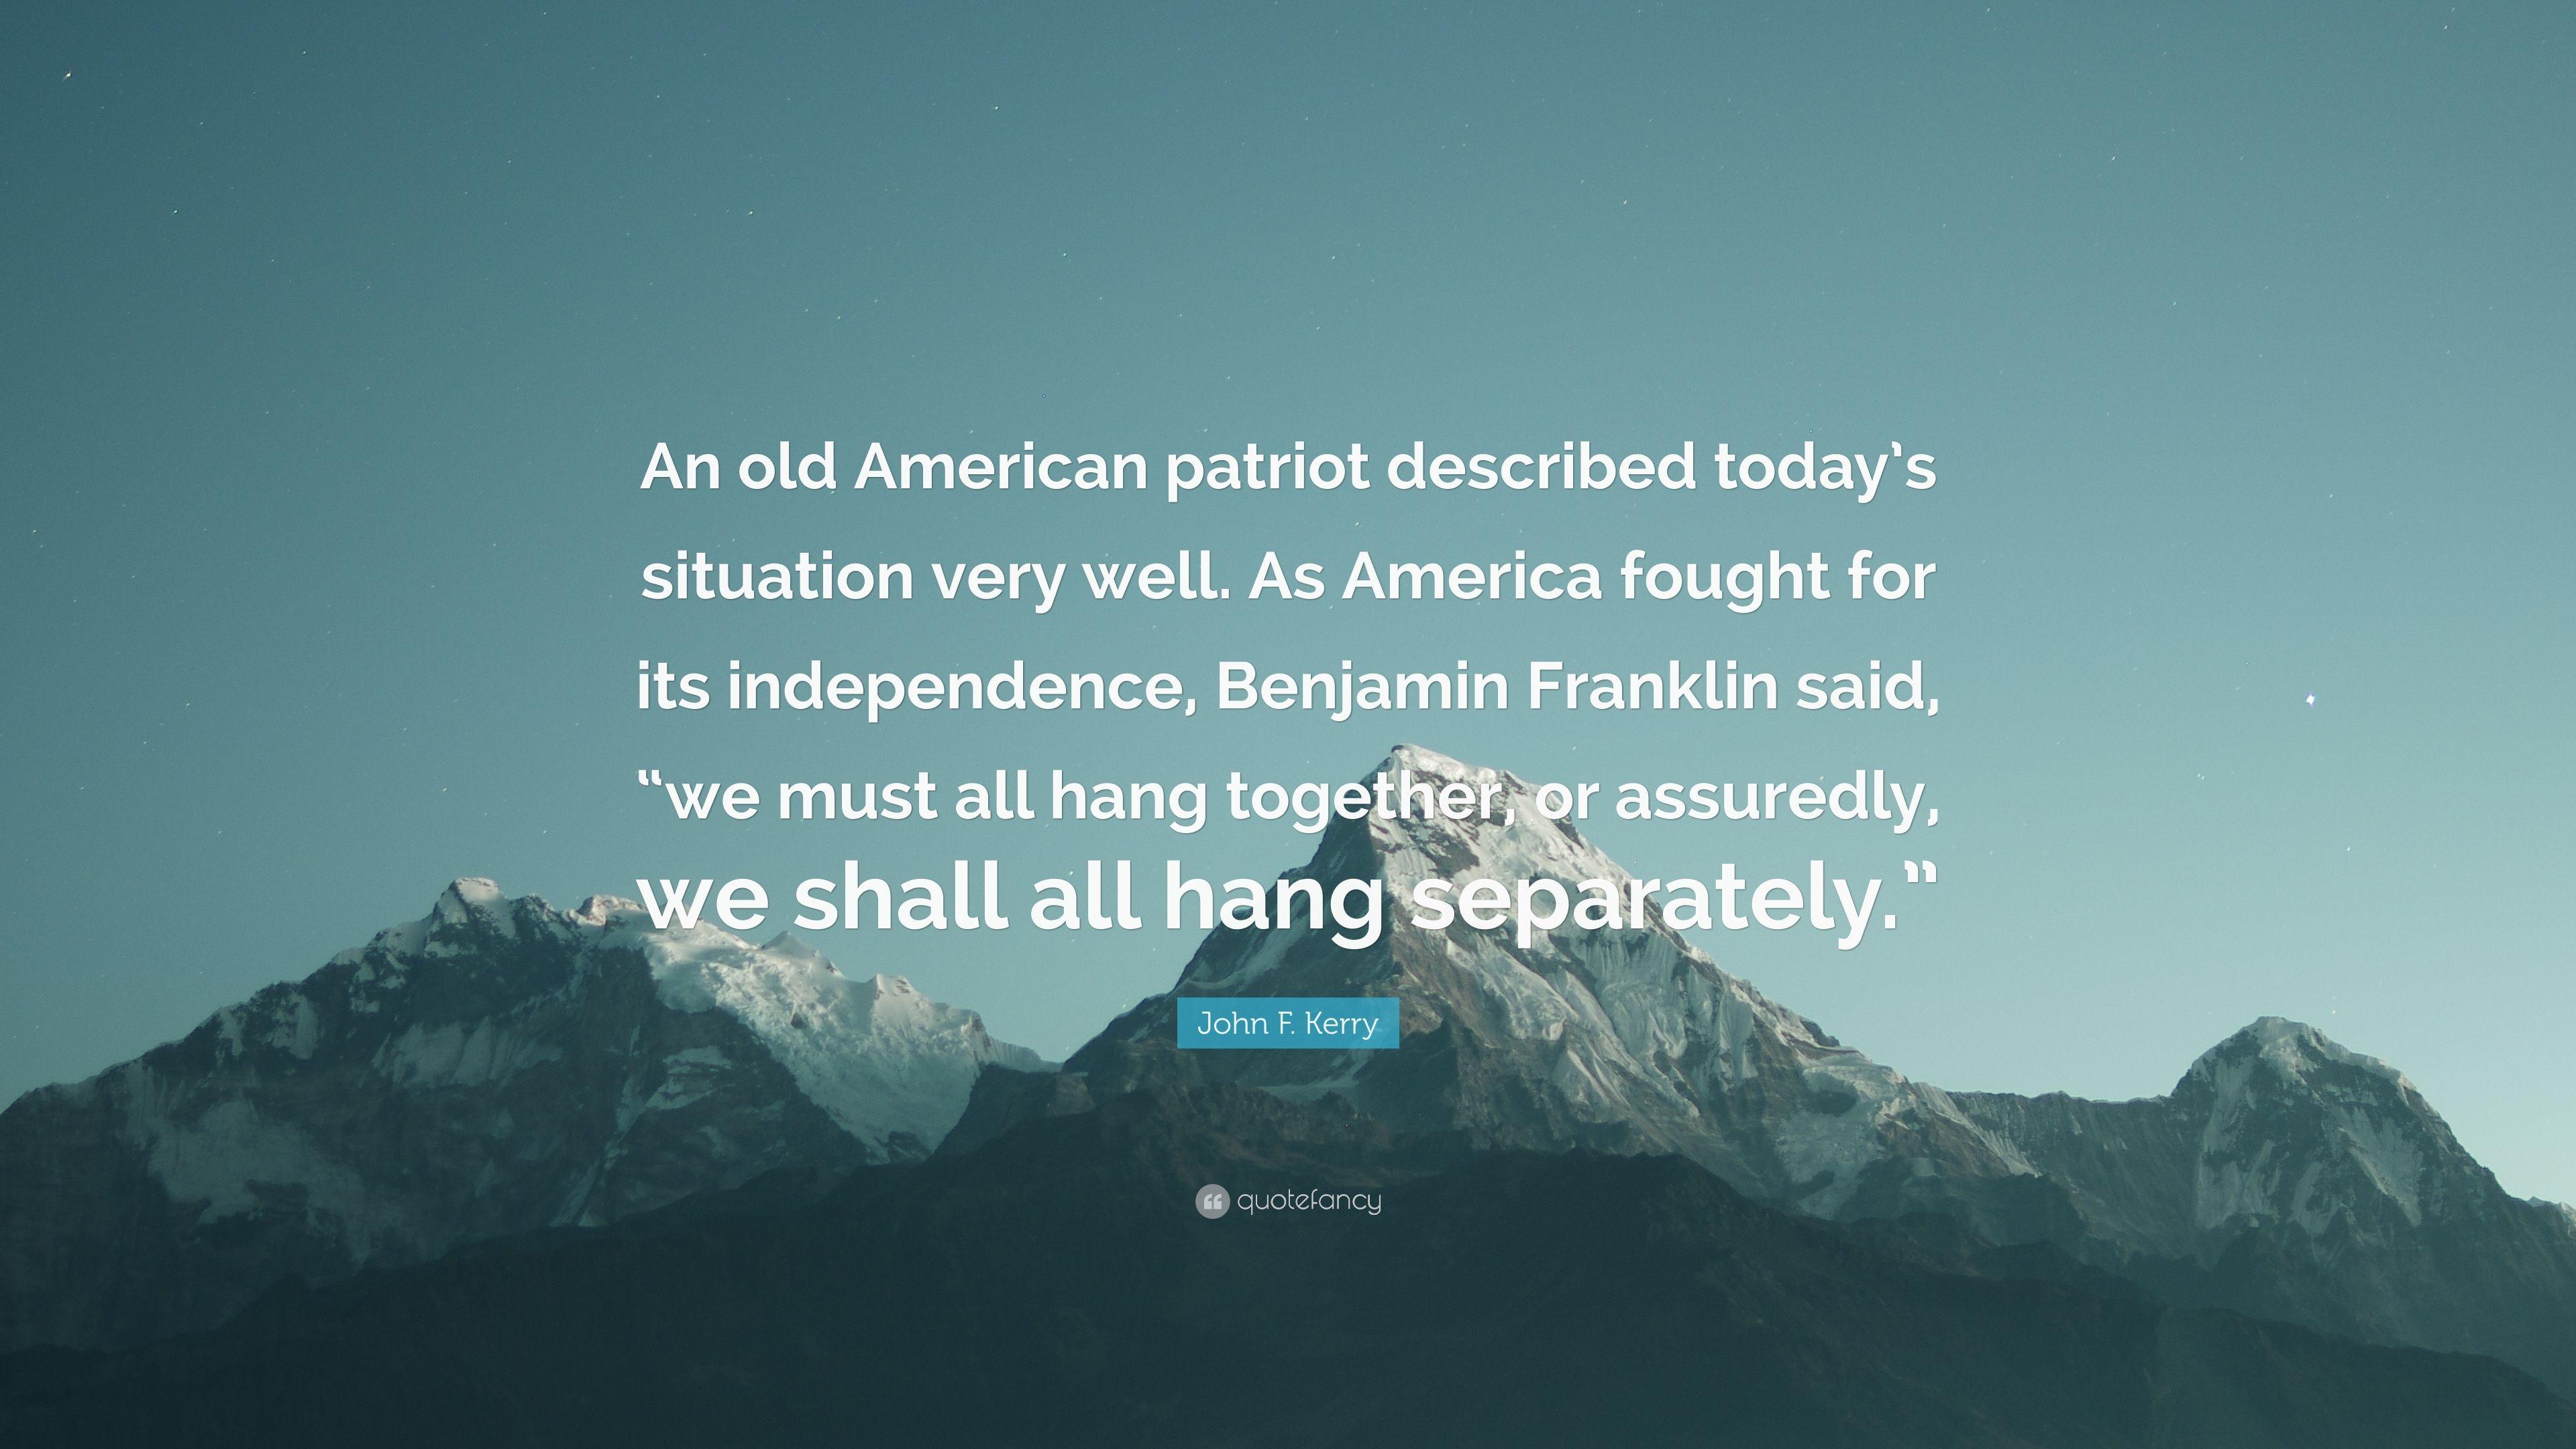 3840x2160 John F. Kerry Trích dẫn: “Một người Mỹ yêu nước cũ được mô tả ngày nay